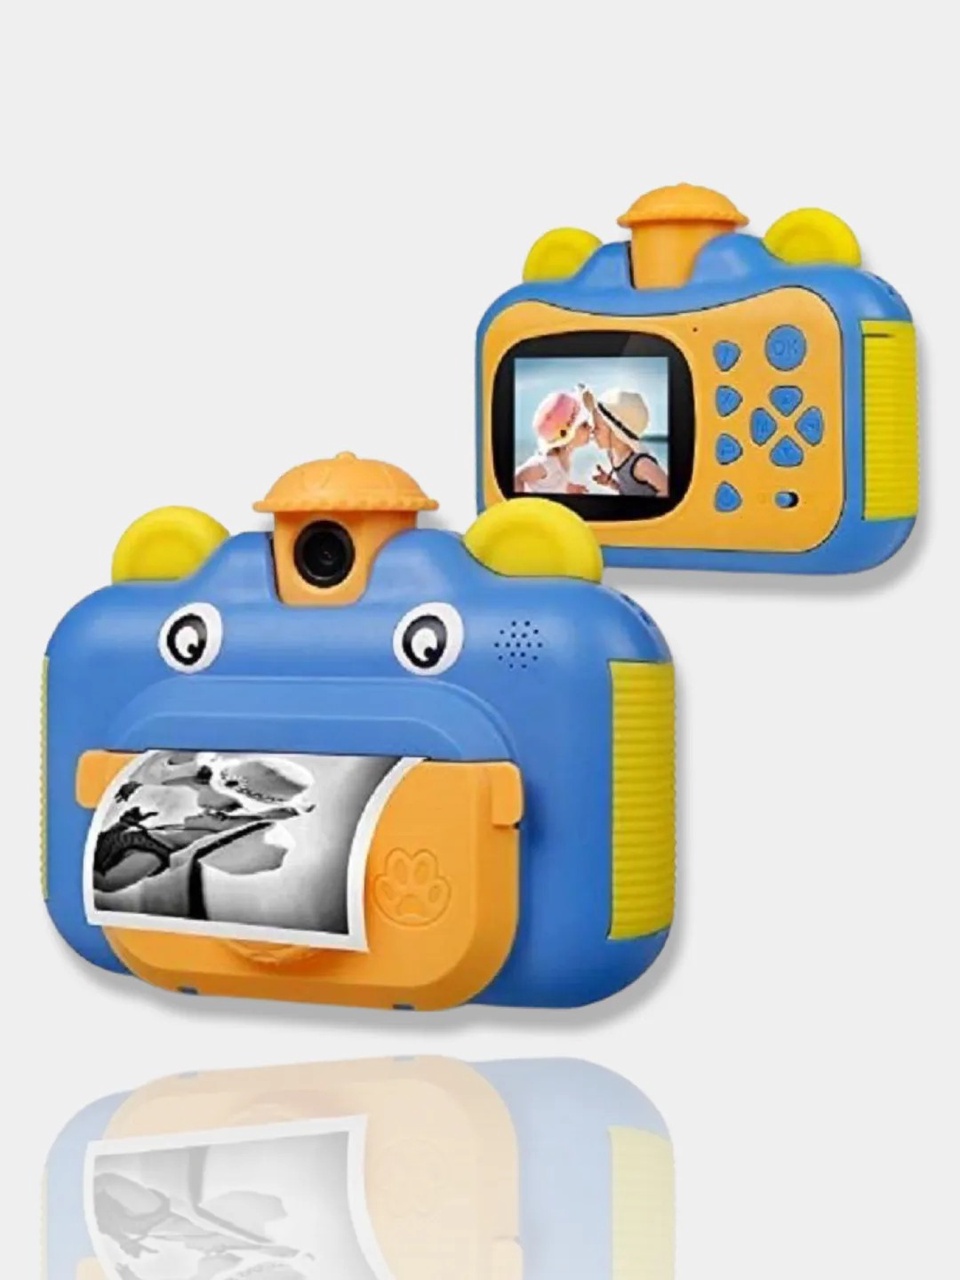 Детский цифровой фотоаппарат с мнгновеной печатью - 4 290 ₽, заказать онлайн.